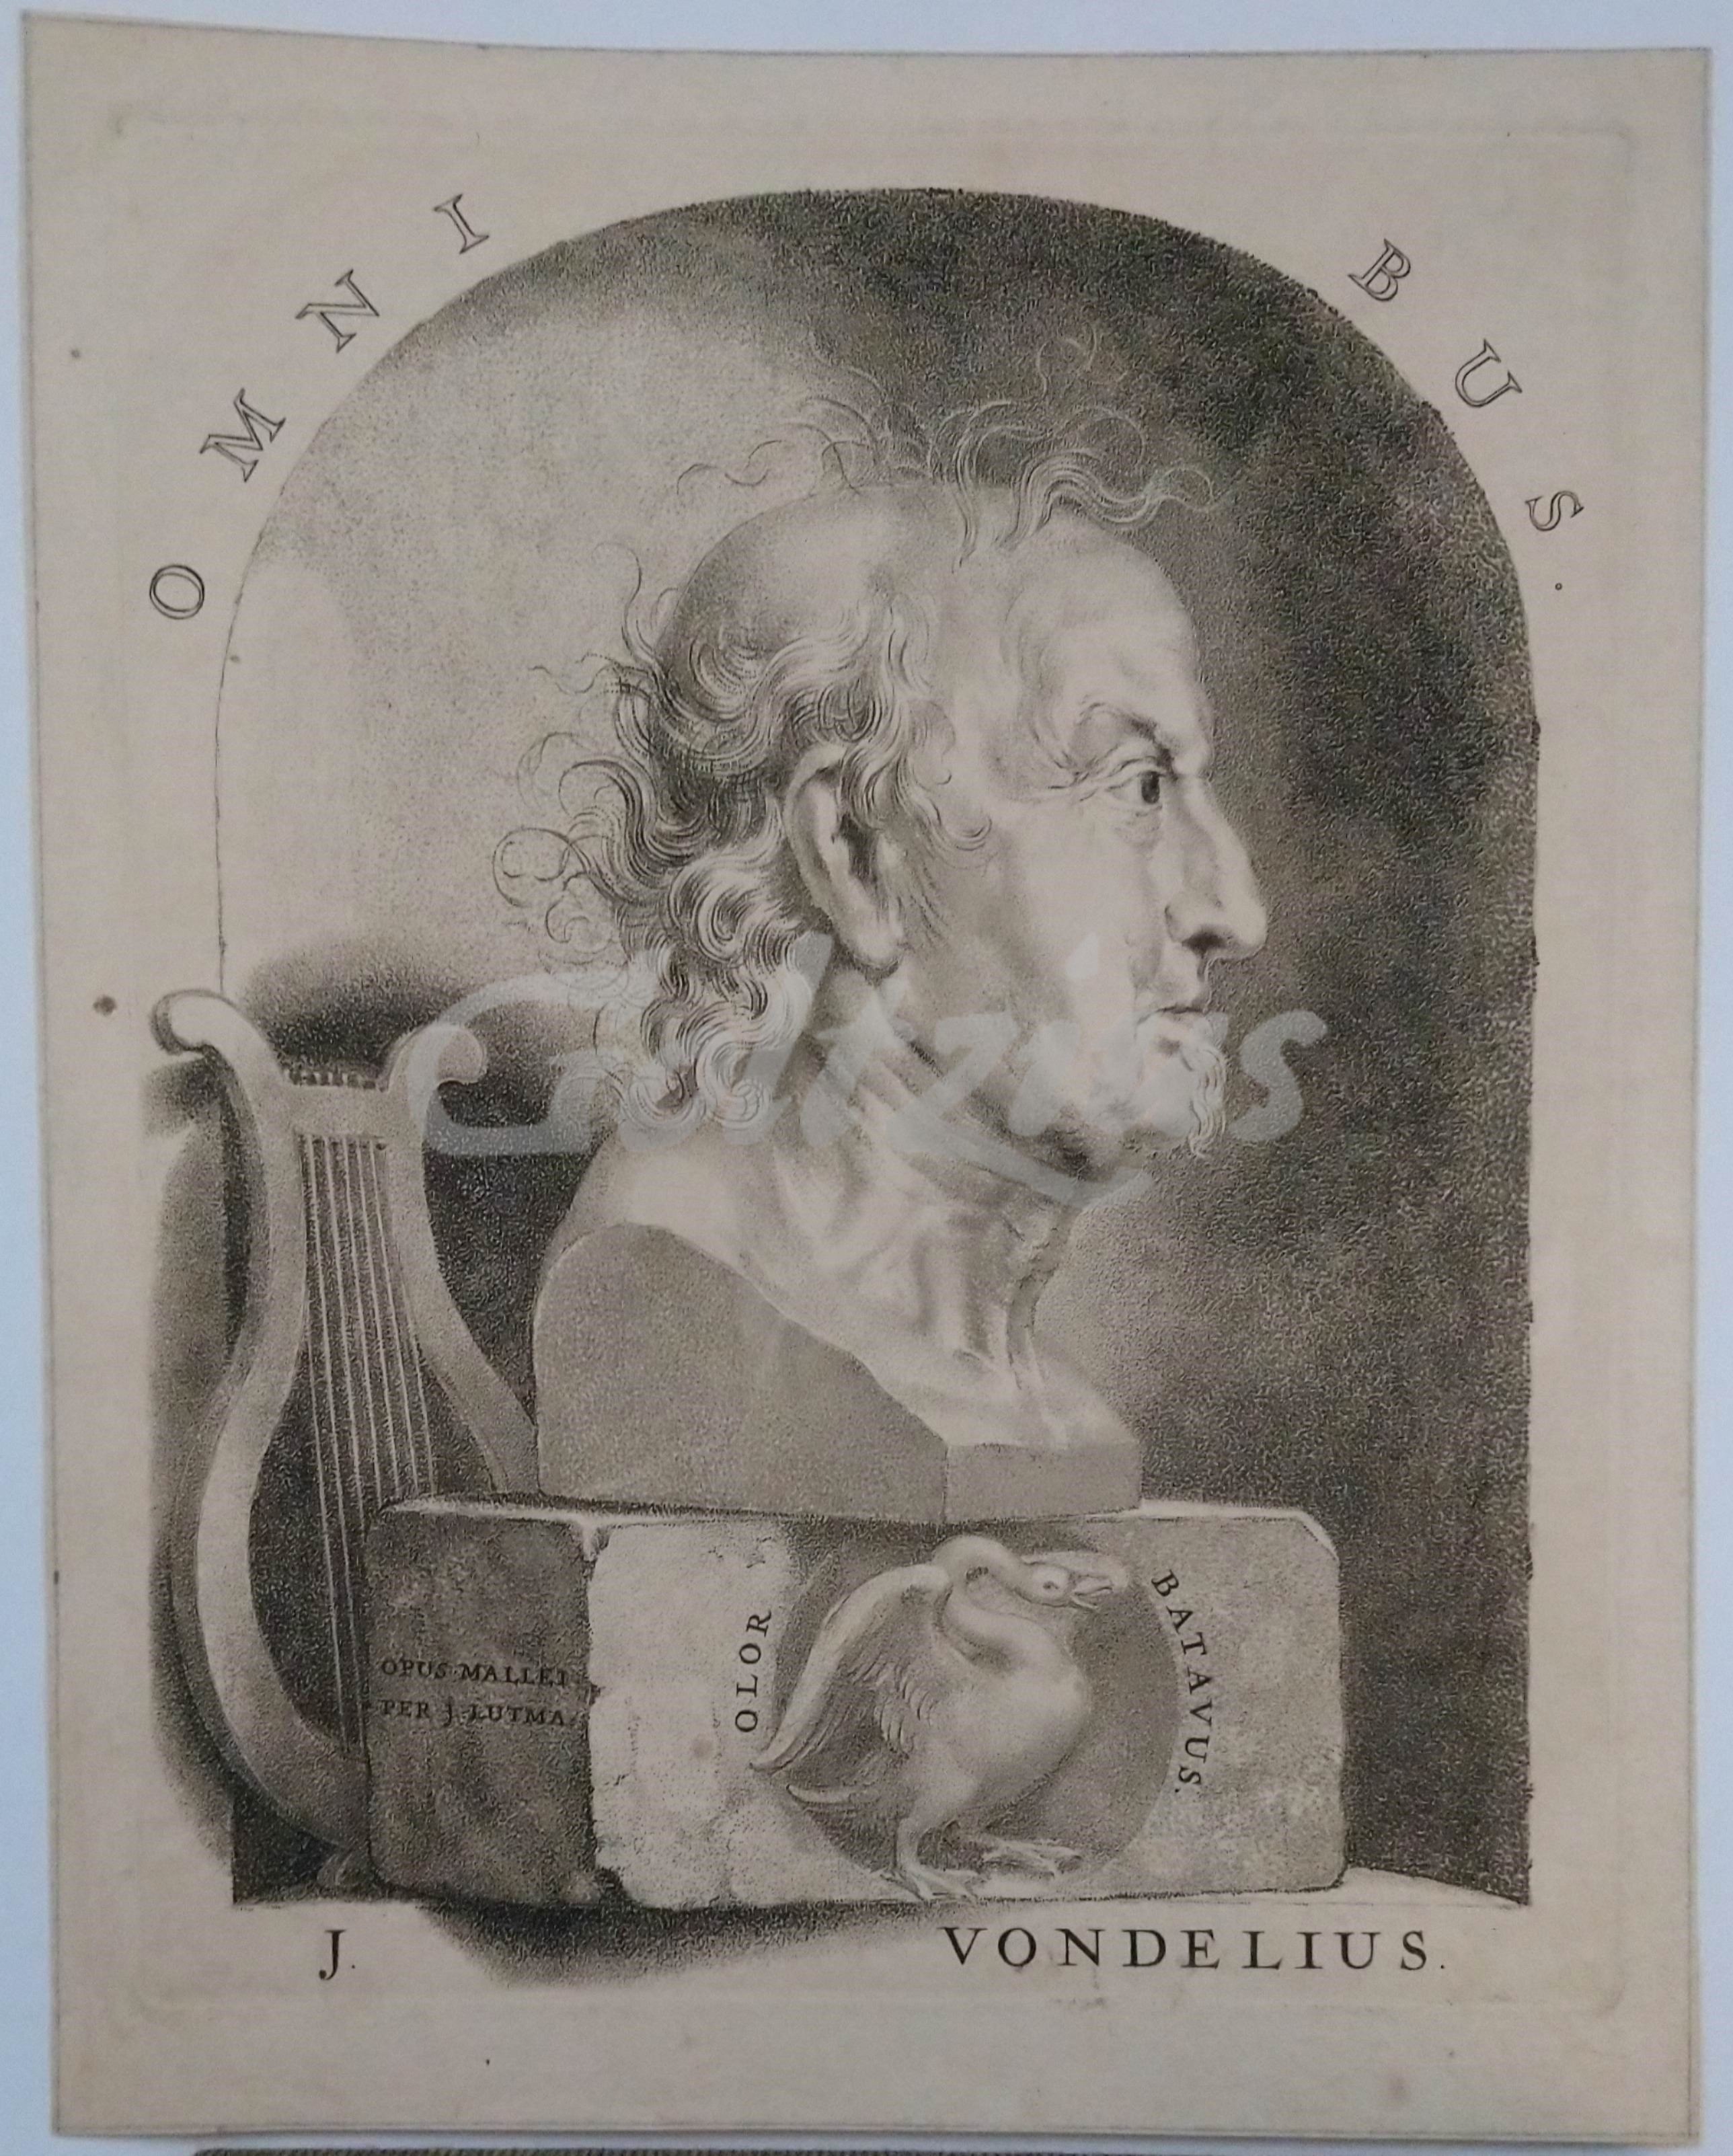 LUTMA, JOHANNES, Portrait of Joost van den Vondel